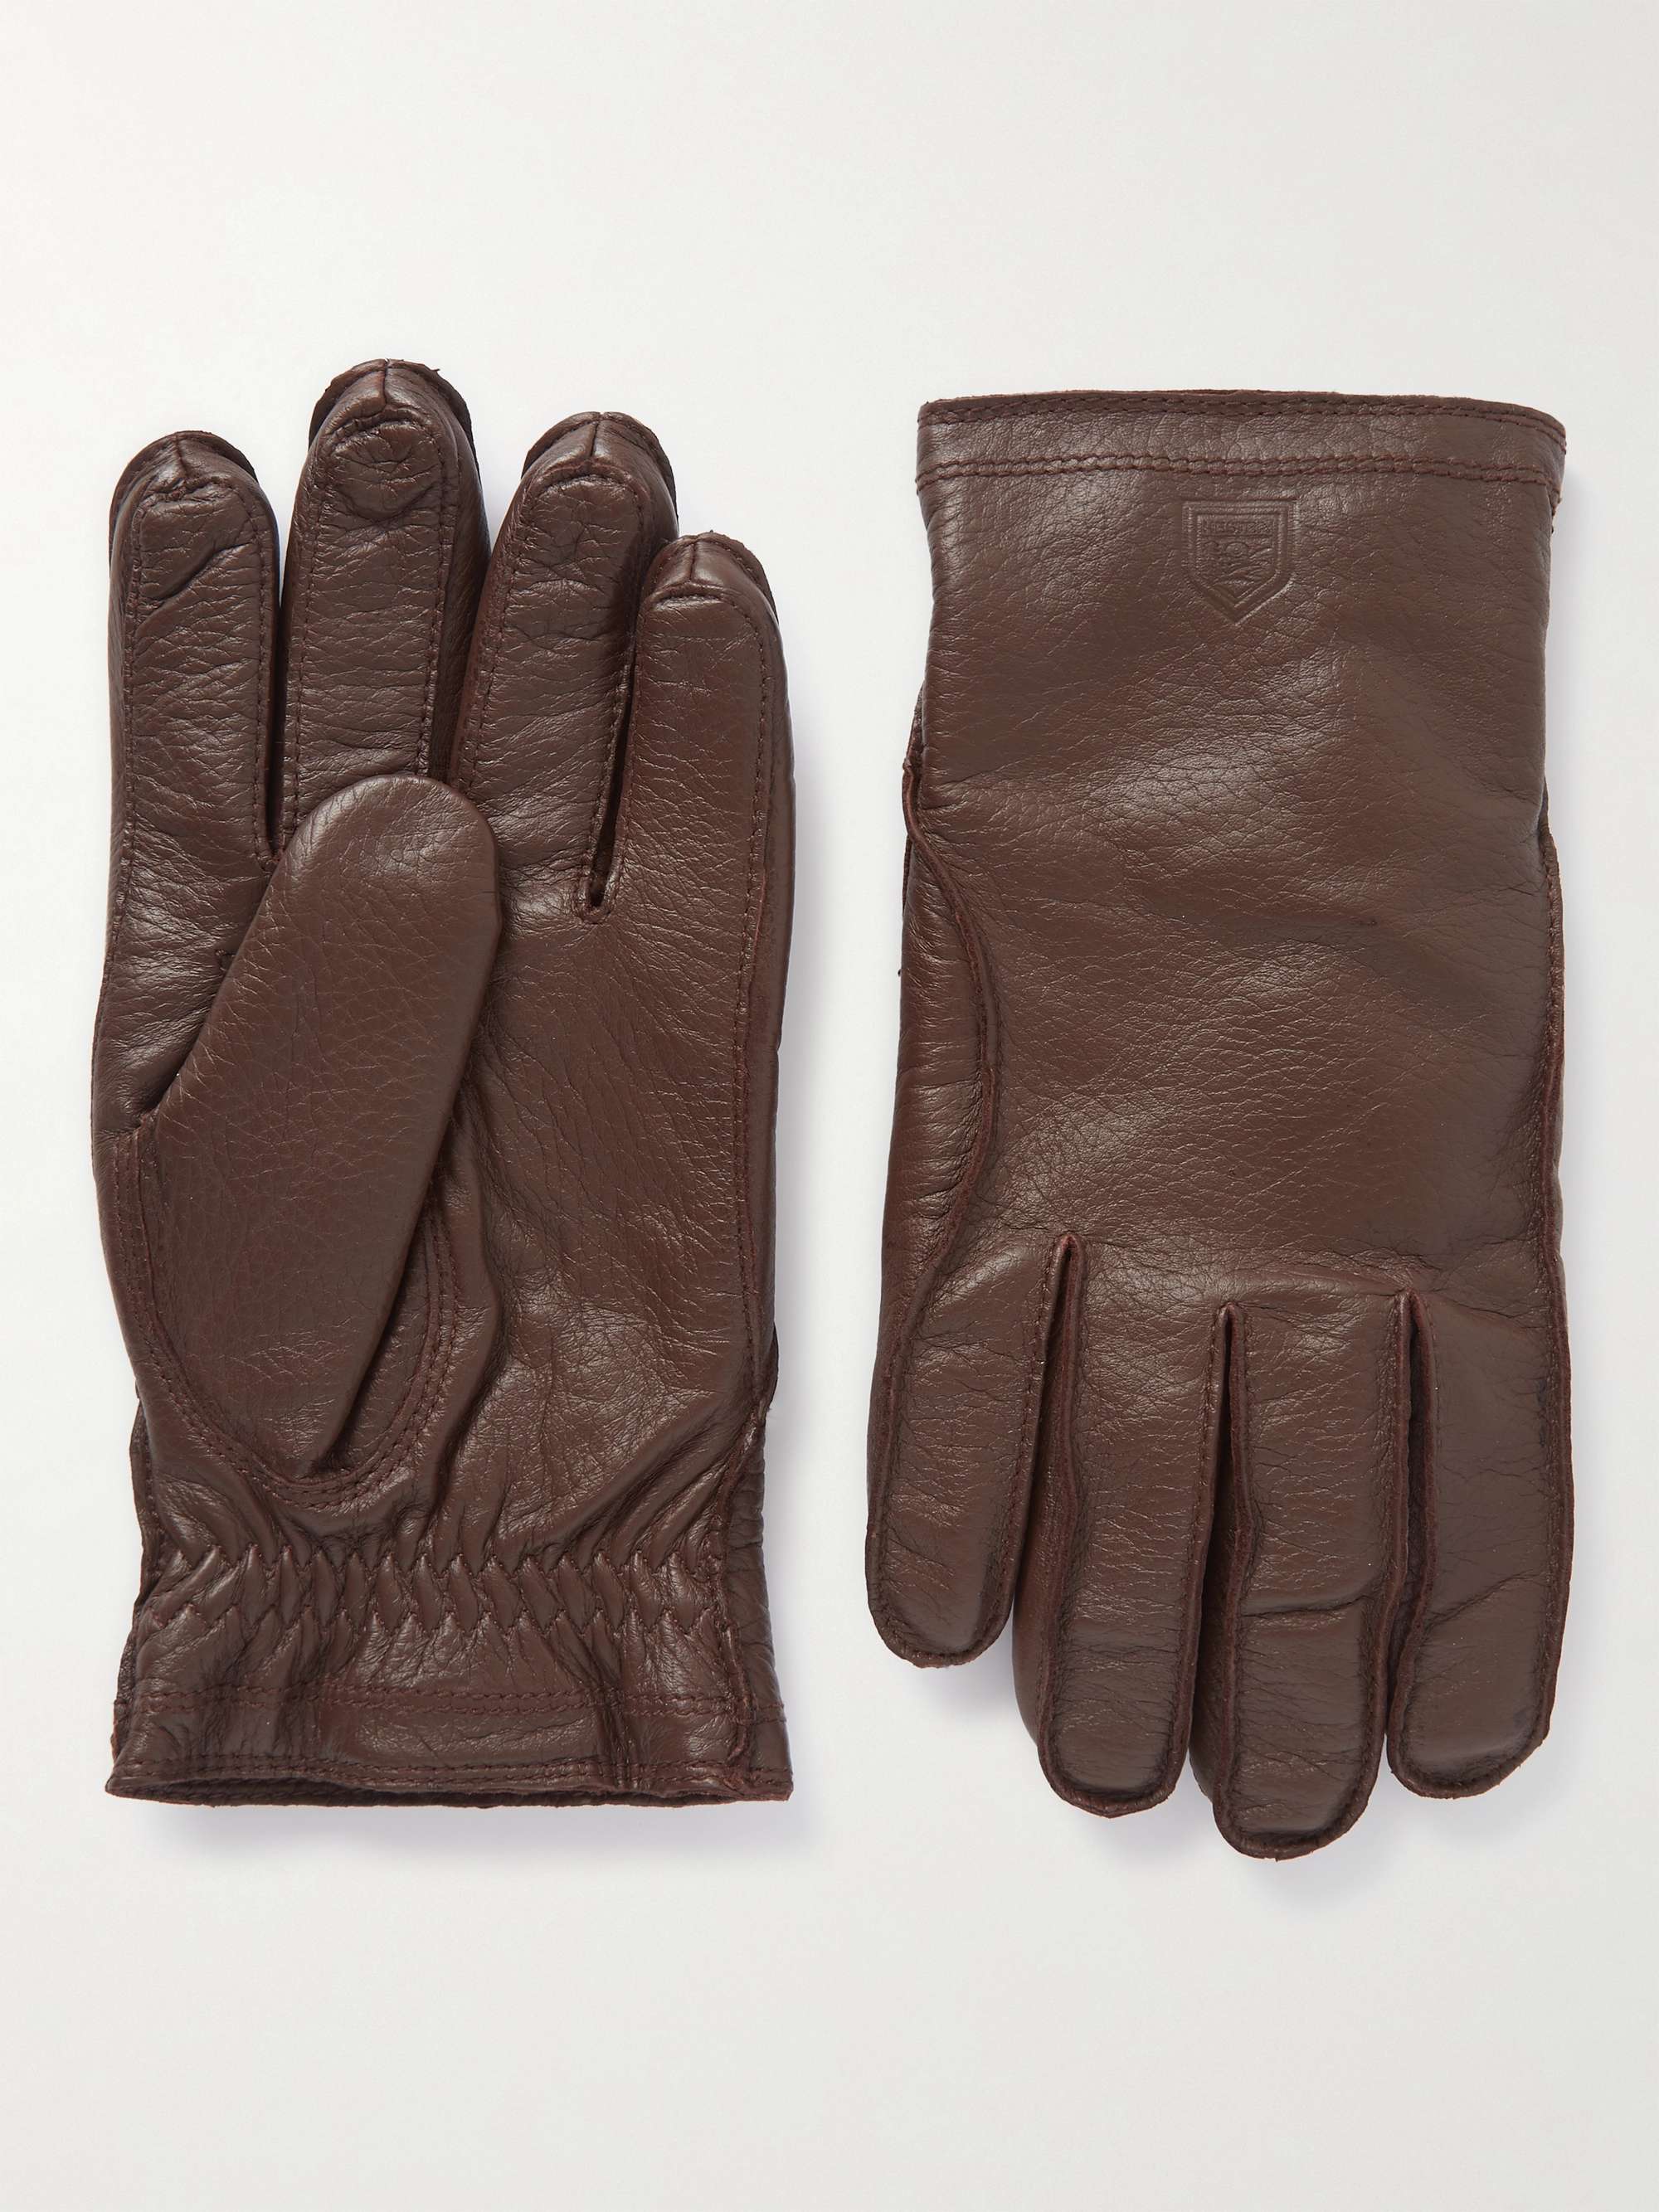 HESTRA Håkon Fleece-Lined Full-Grain Leather Gloves